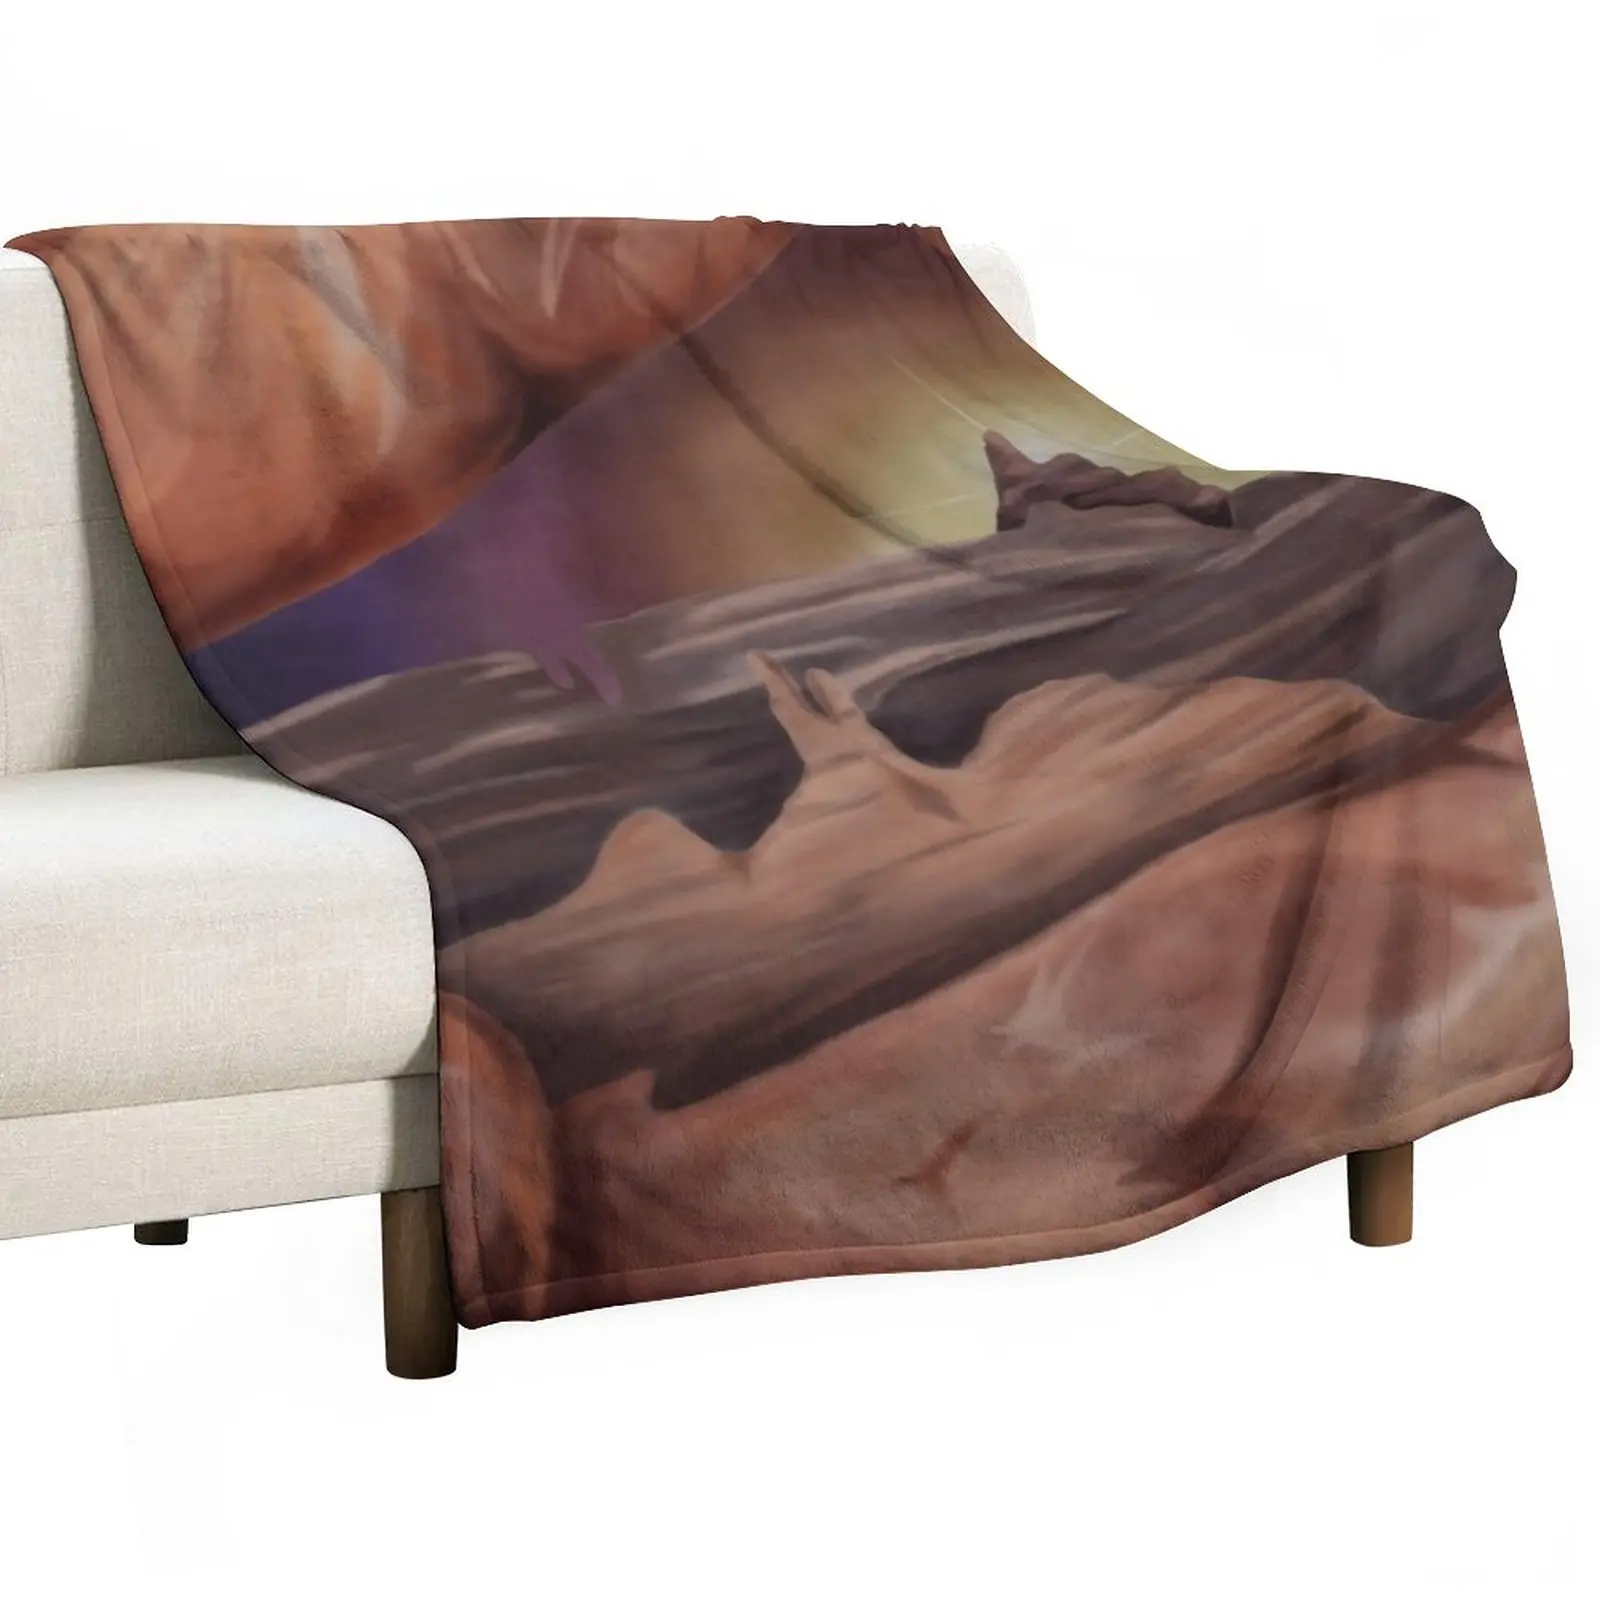 Горы в сумерках Бросок Одеяло Туристическое одеяло Плед